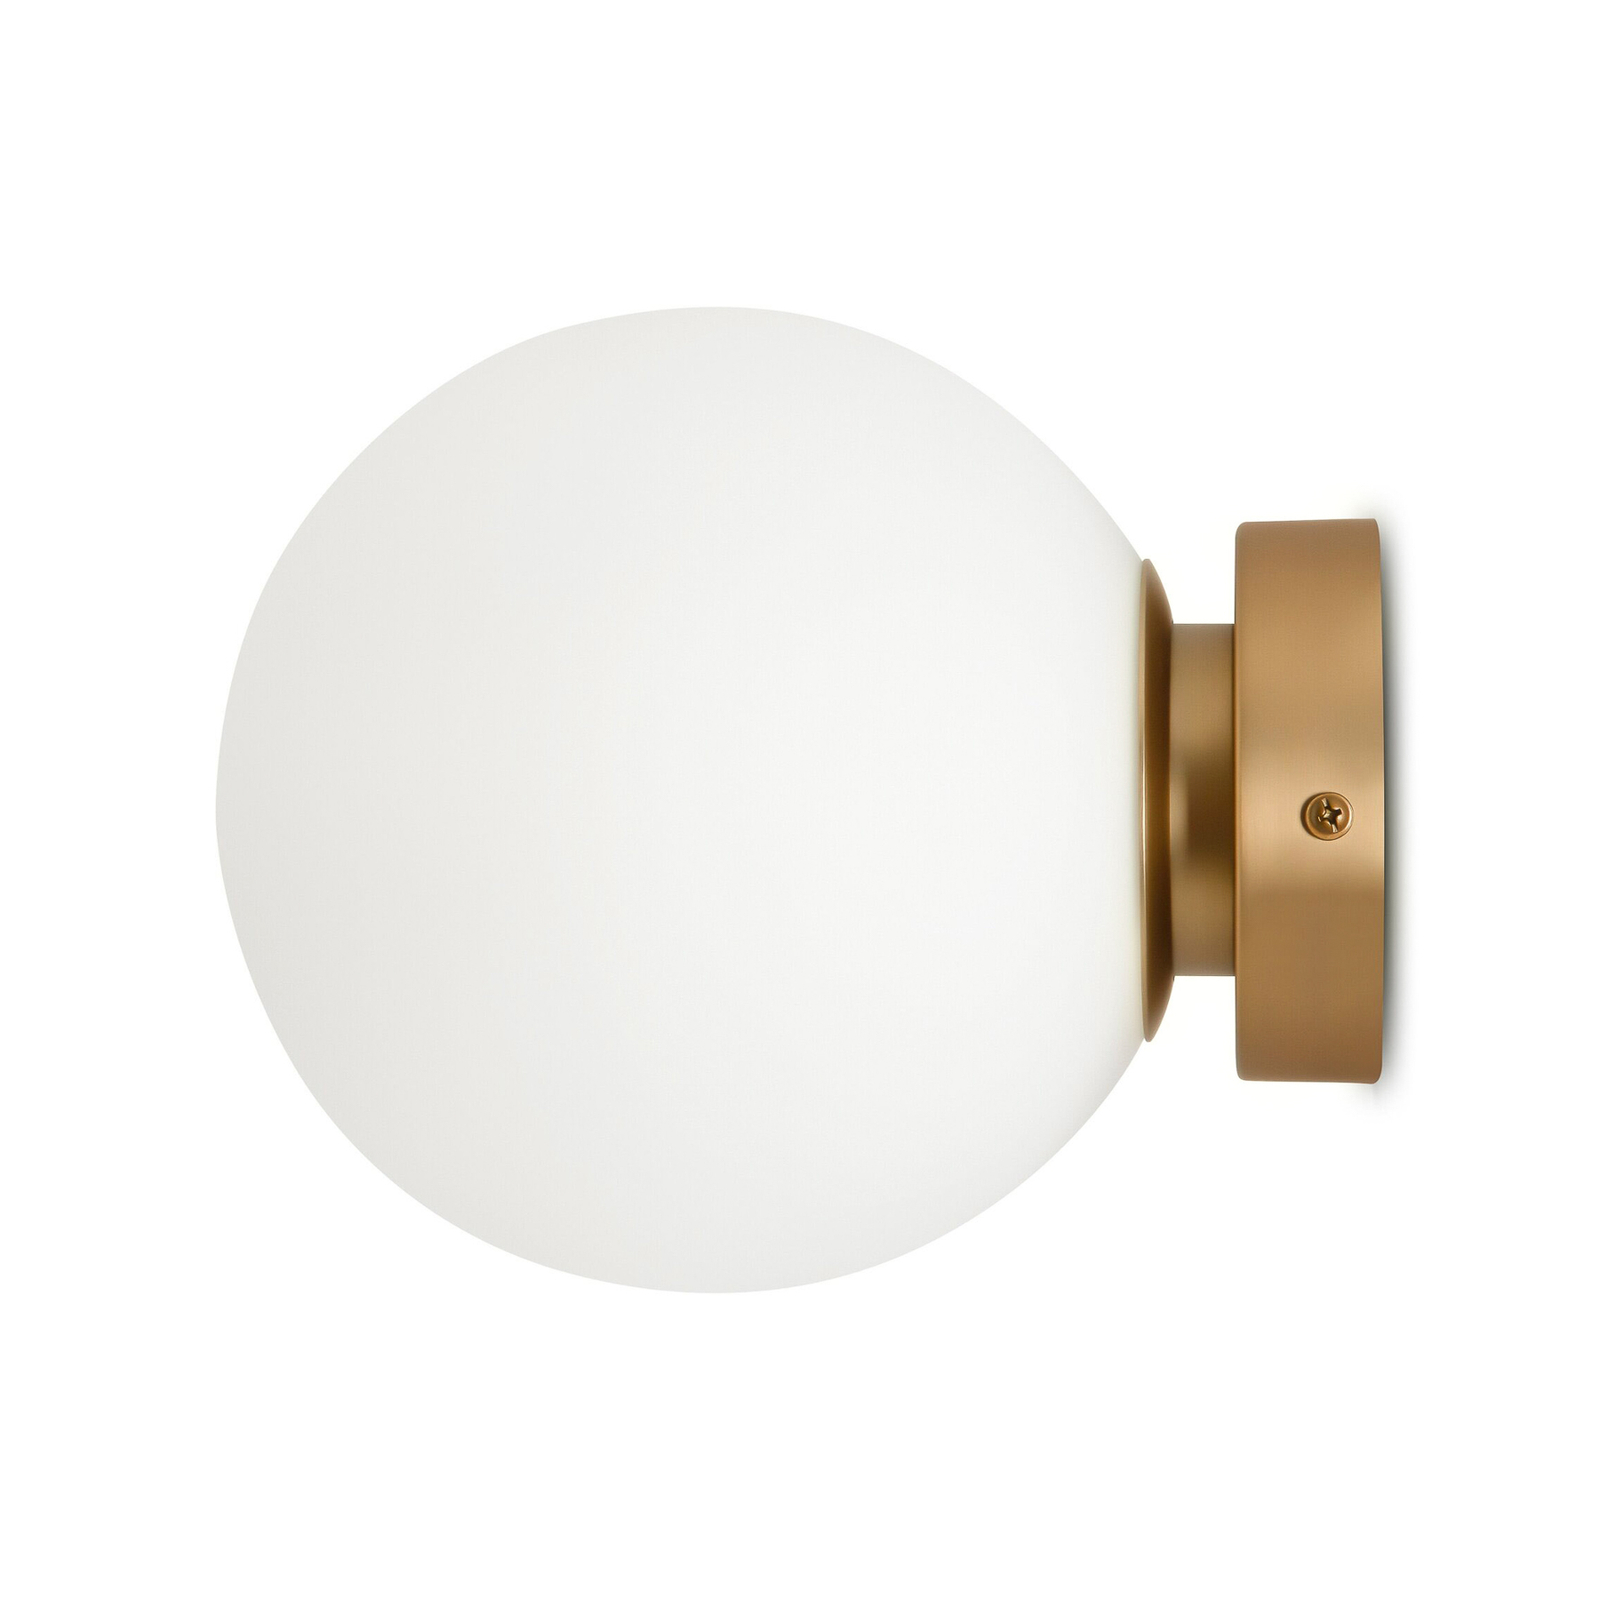 Maytoni wandlamp Basic vorm, wit/goud